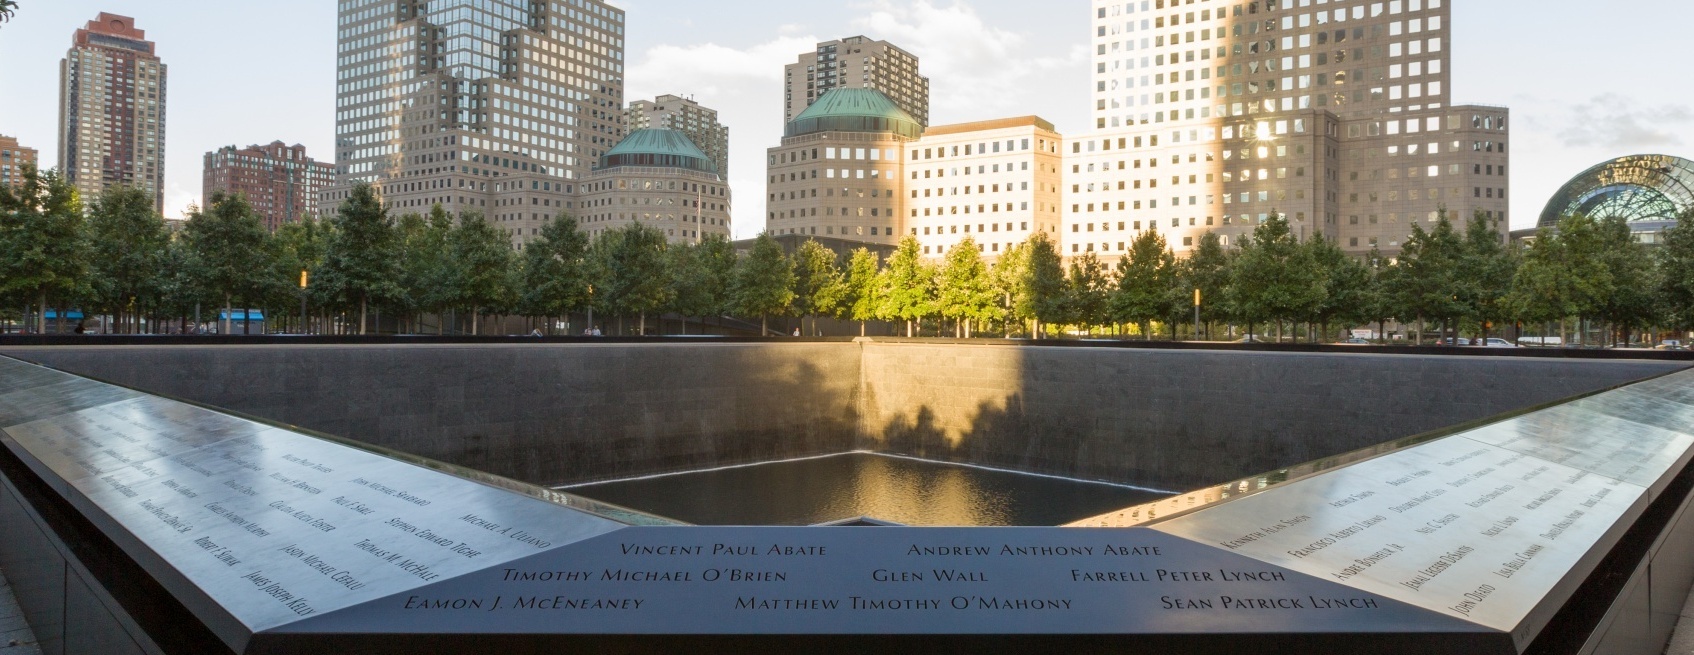 9/11 Heroes Fund